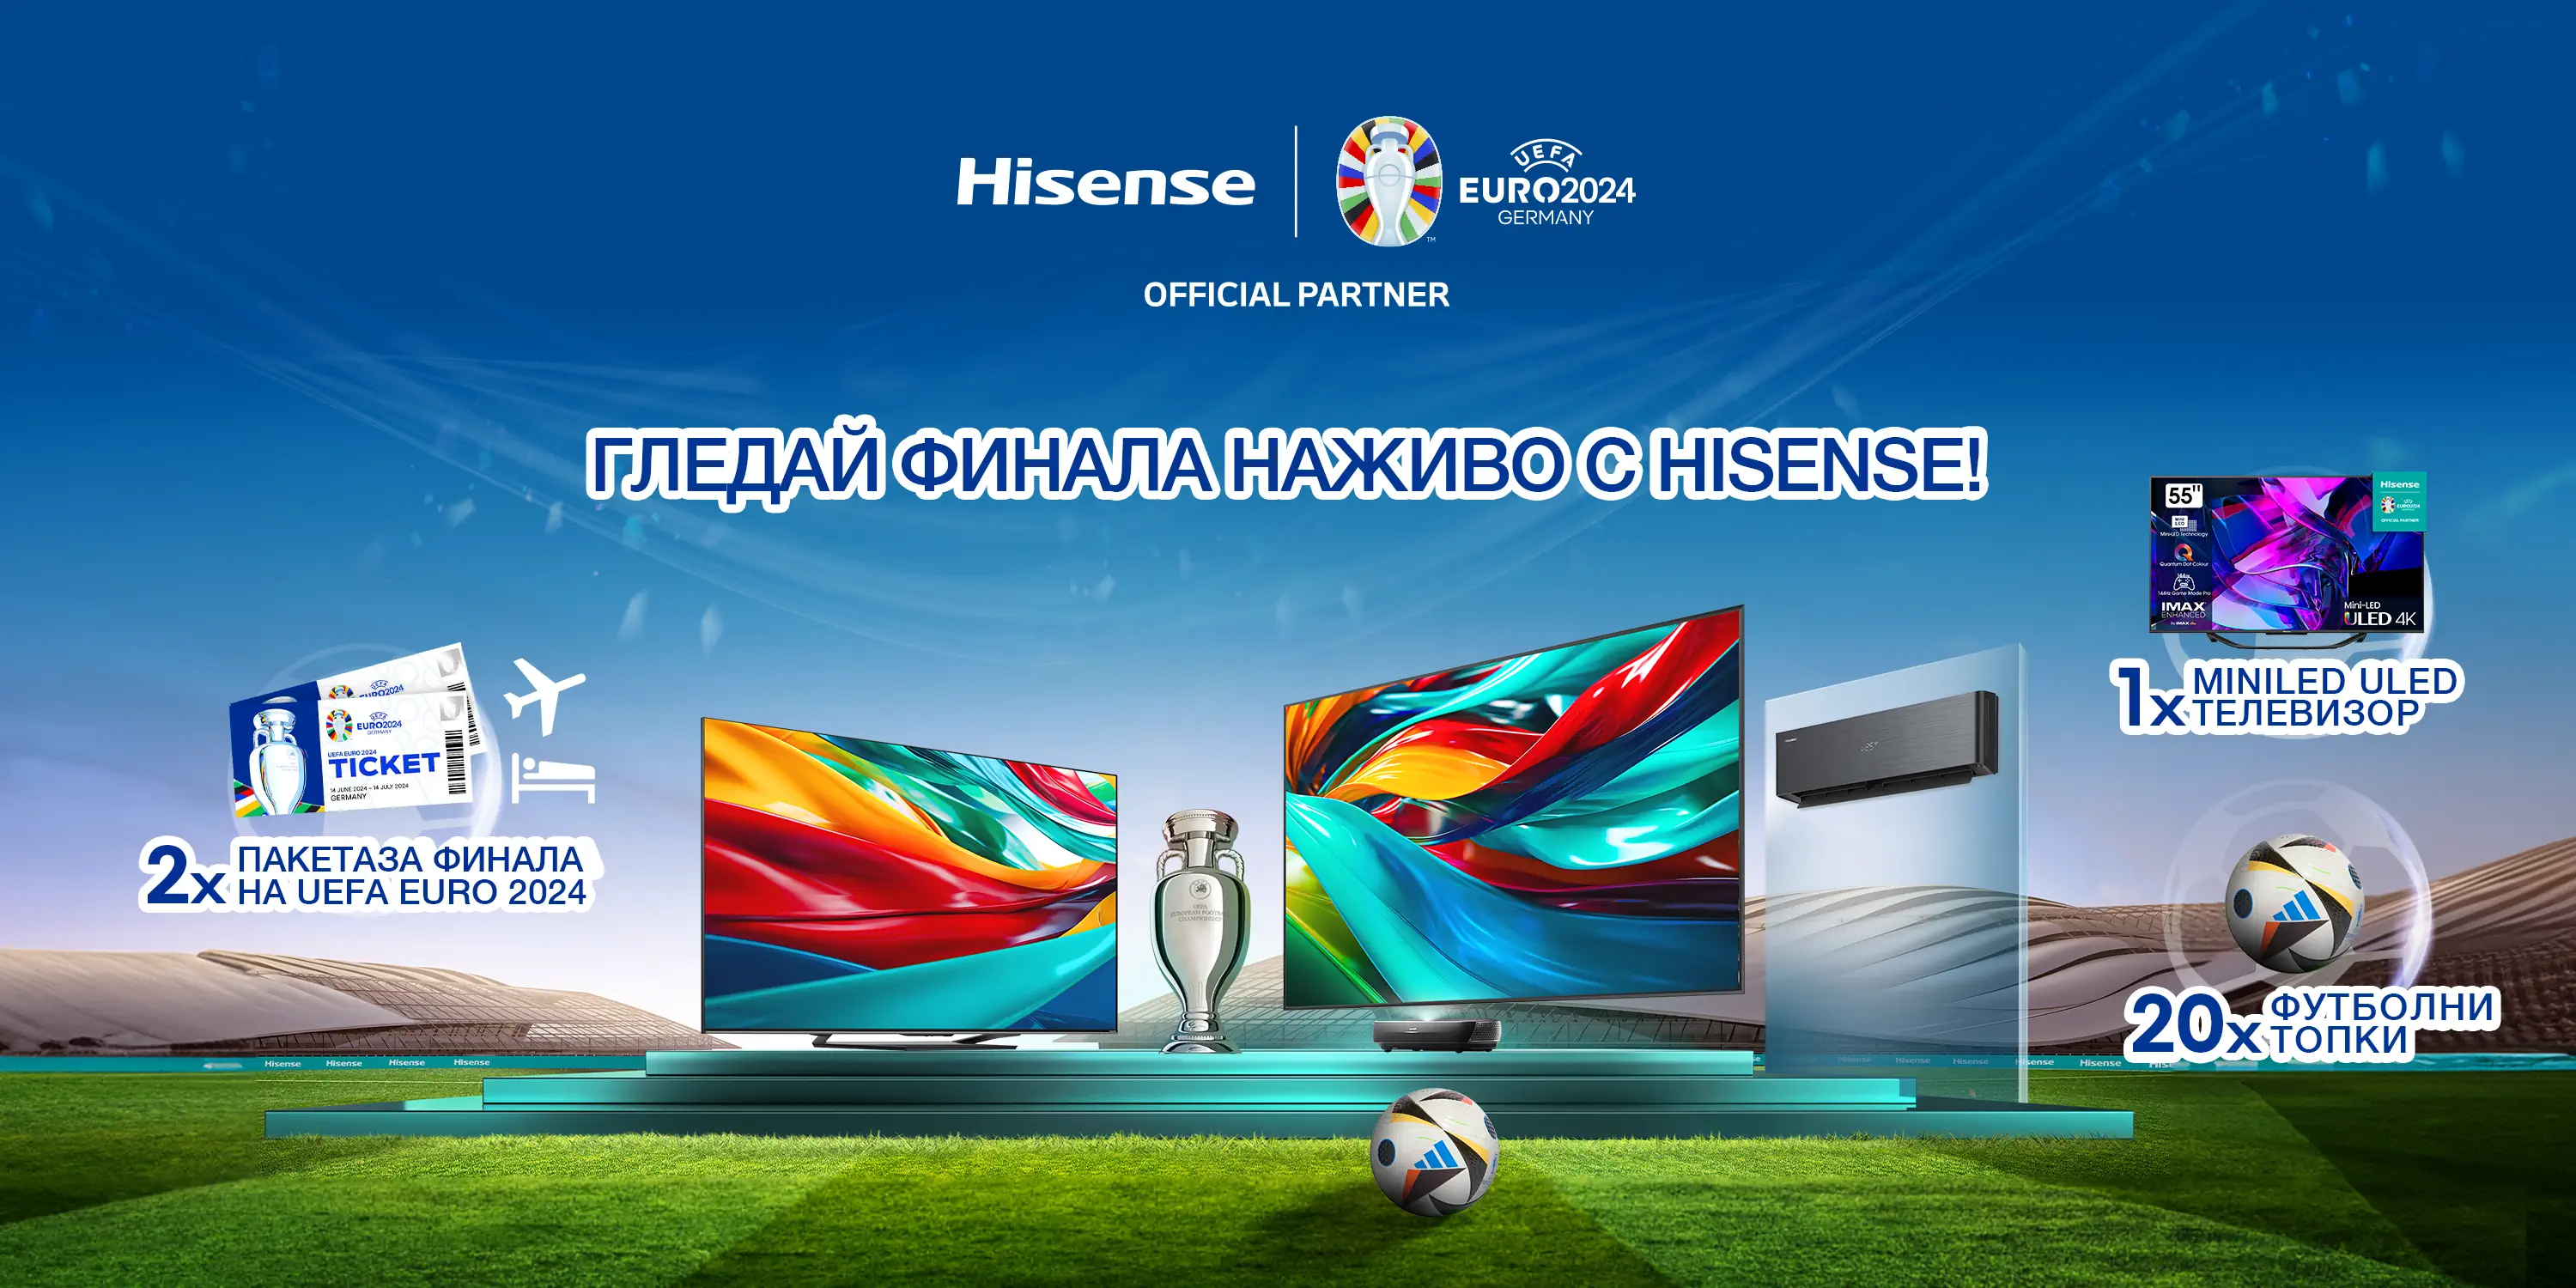 HP-Banner-Hisense-x-EURO2024-copy.webp